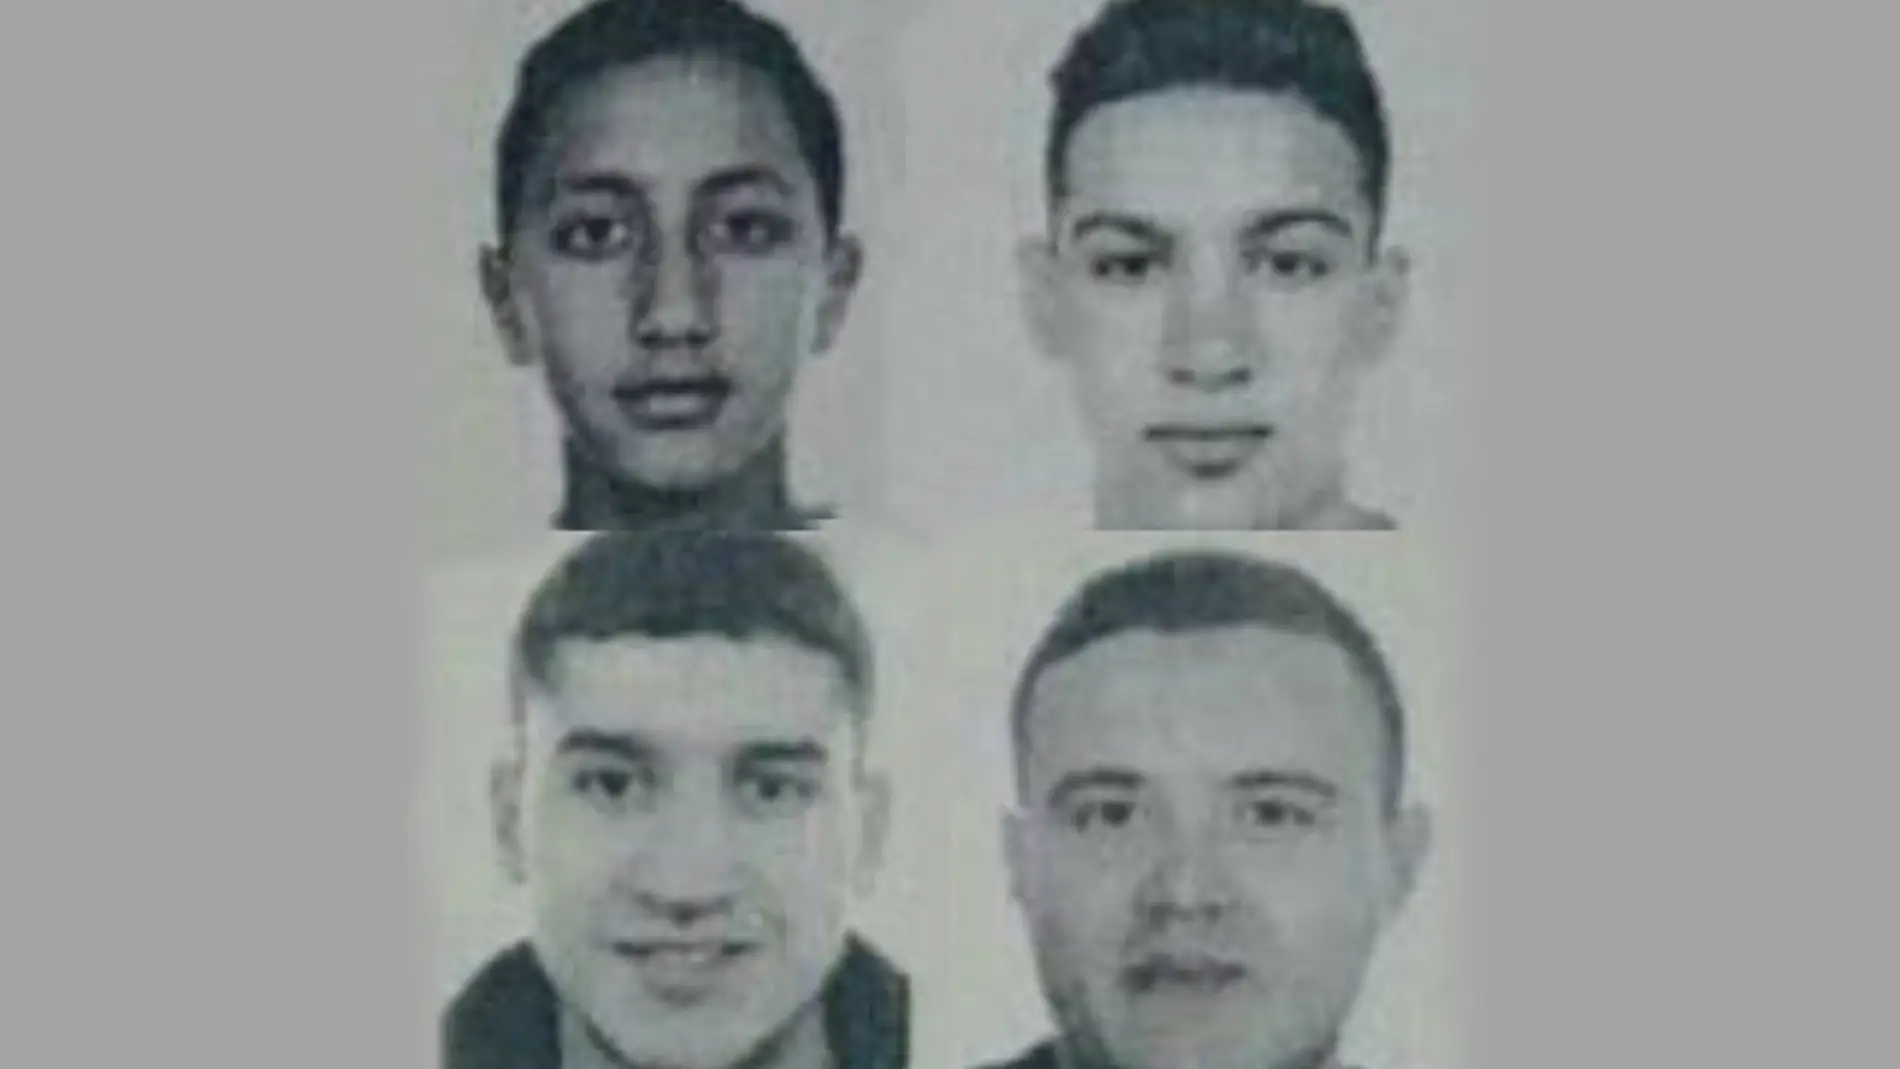 La policía difunde los nombres de cuatro personas que buscan por los atentados de Cataluña